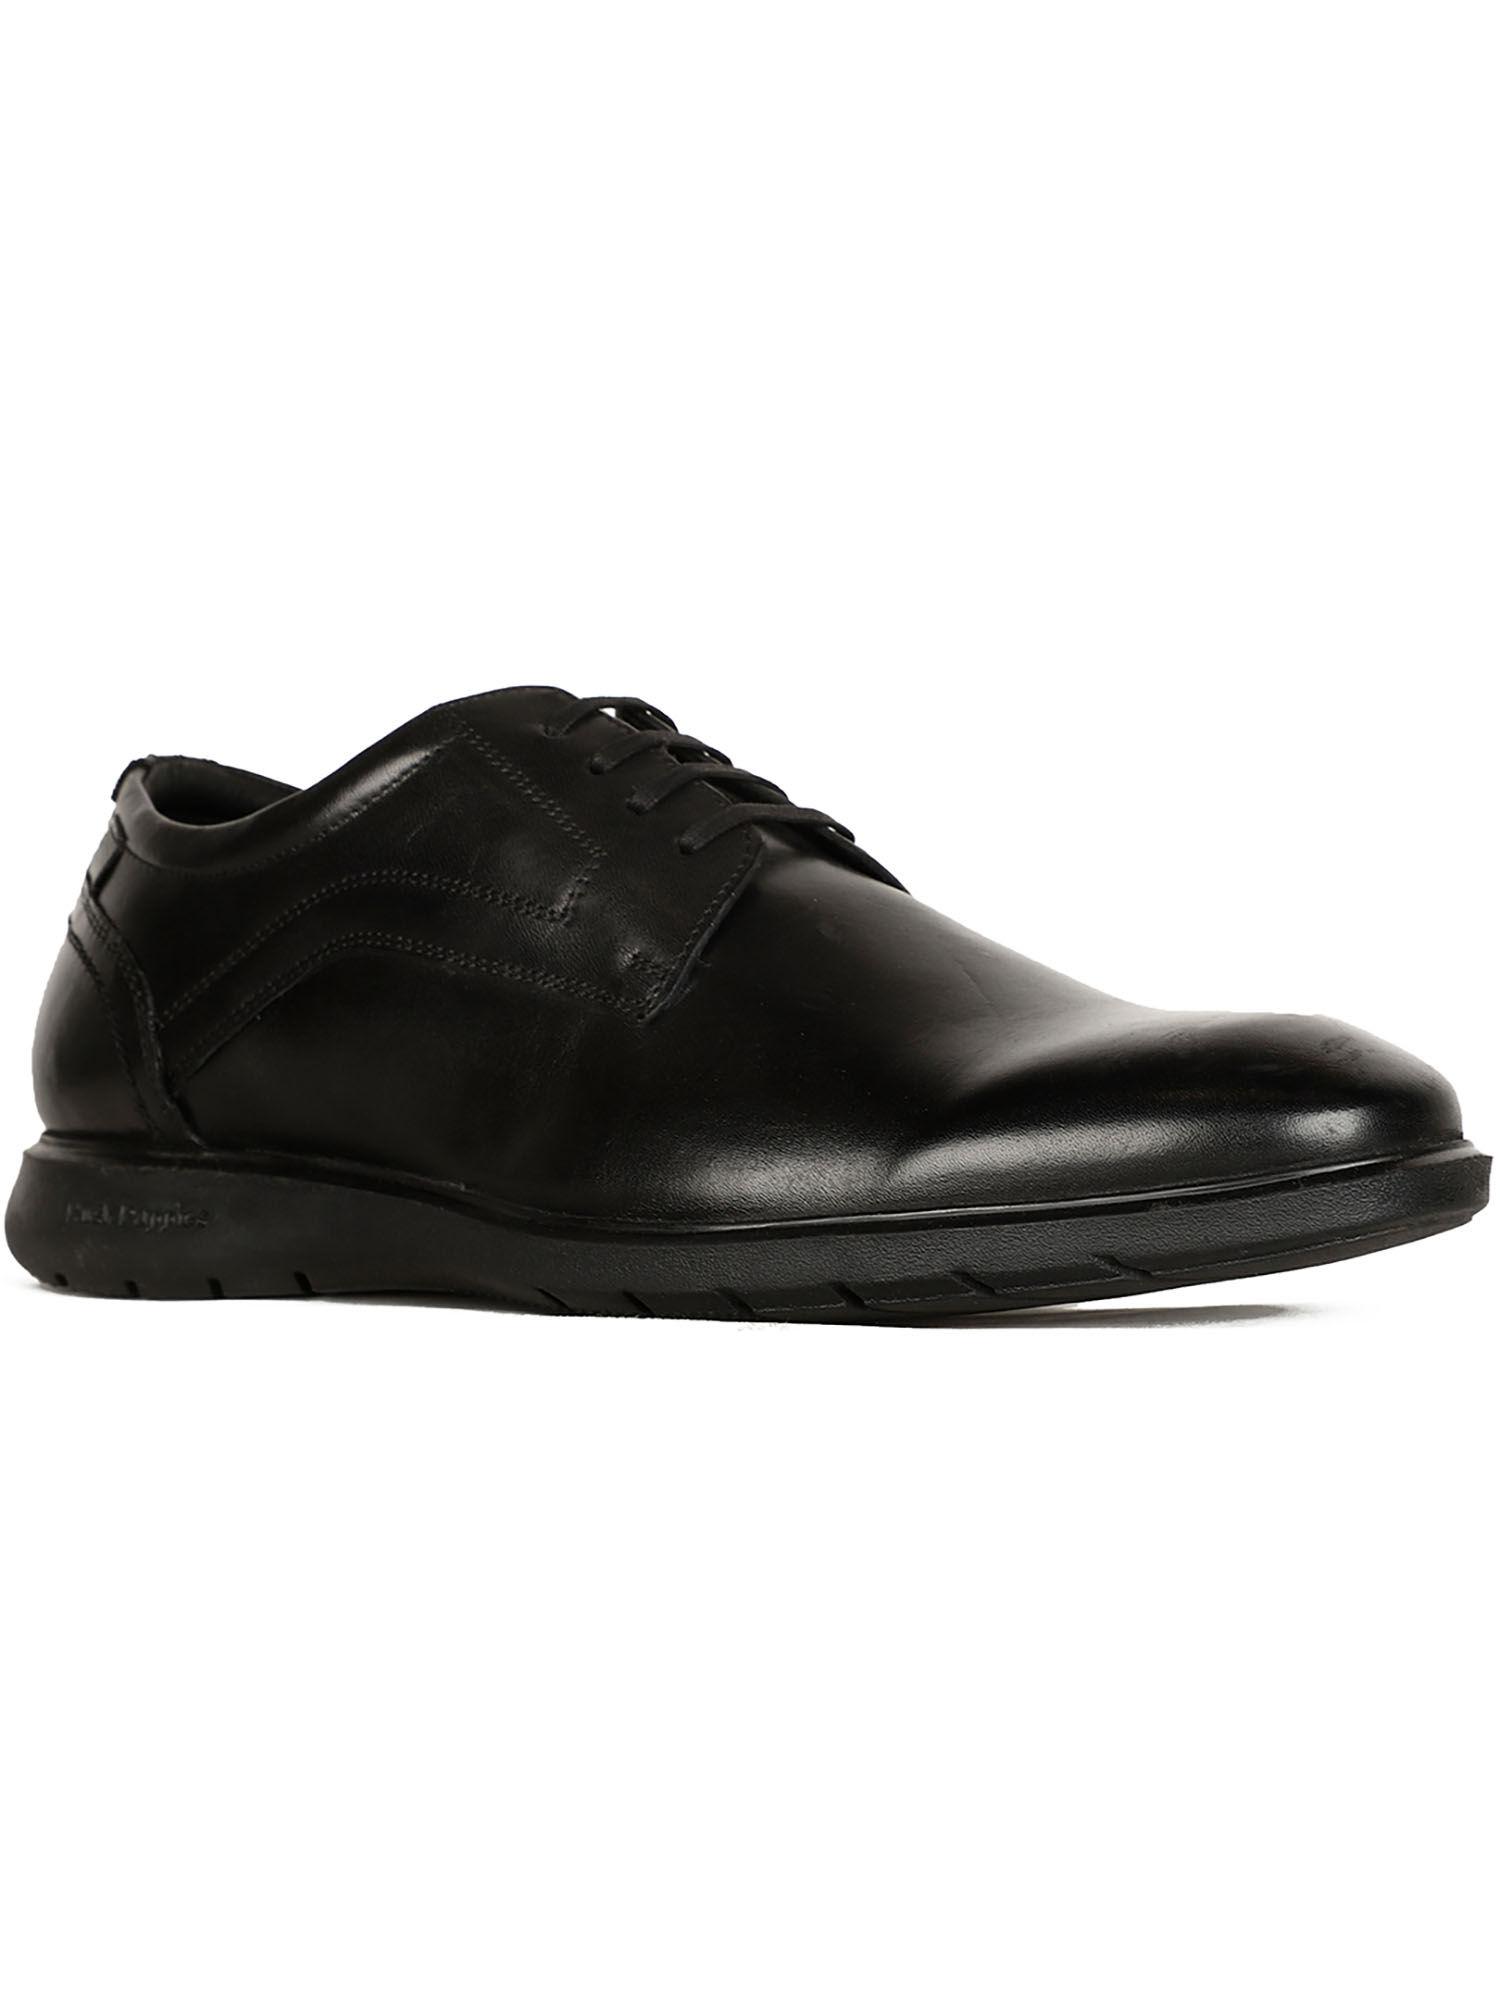 men black lace-up formal shoes